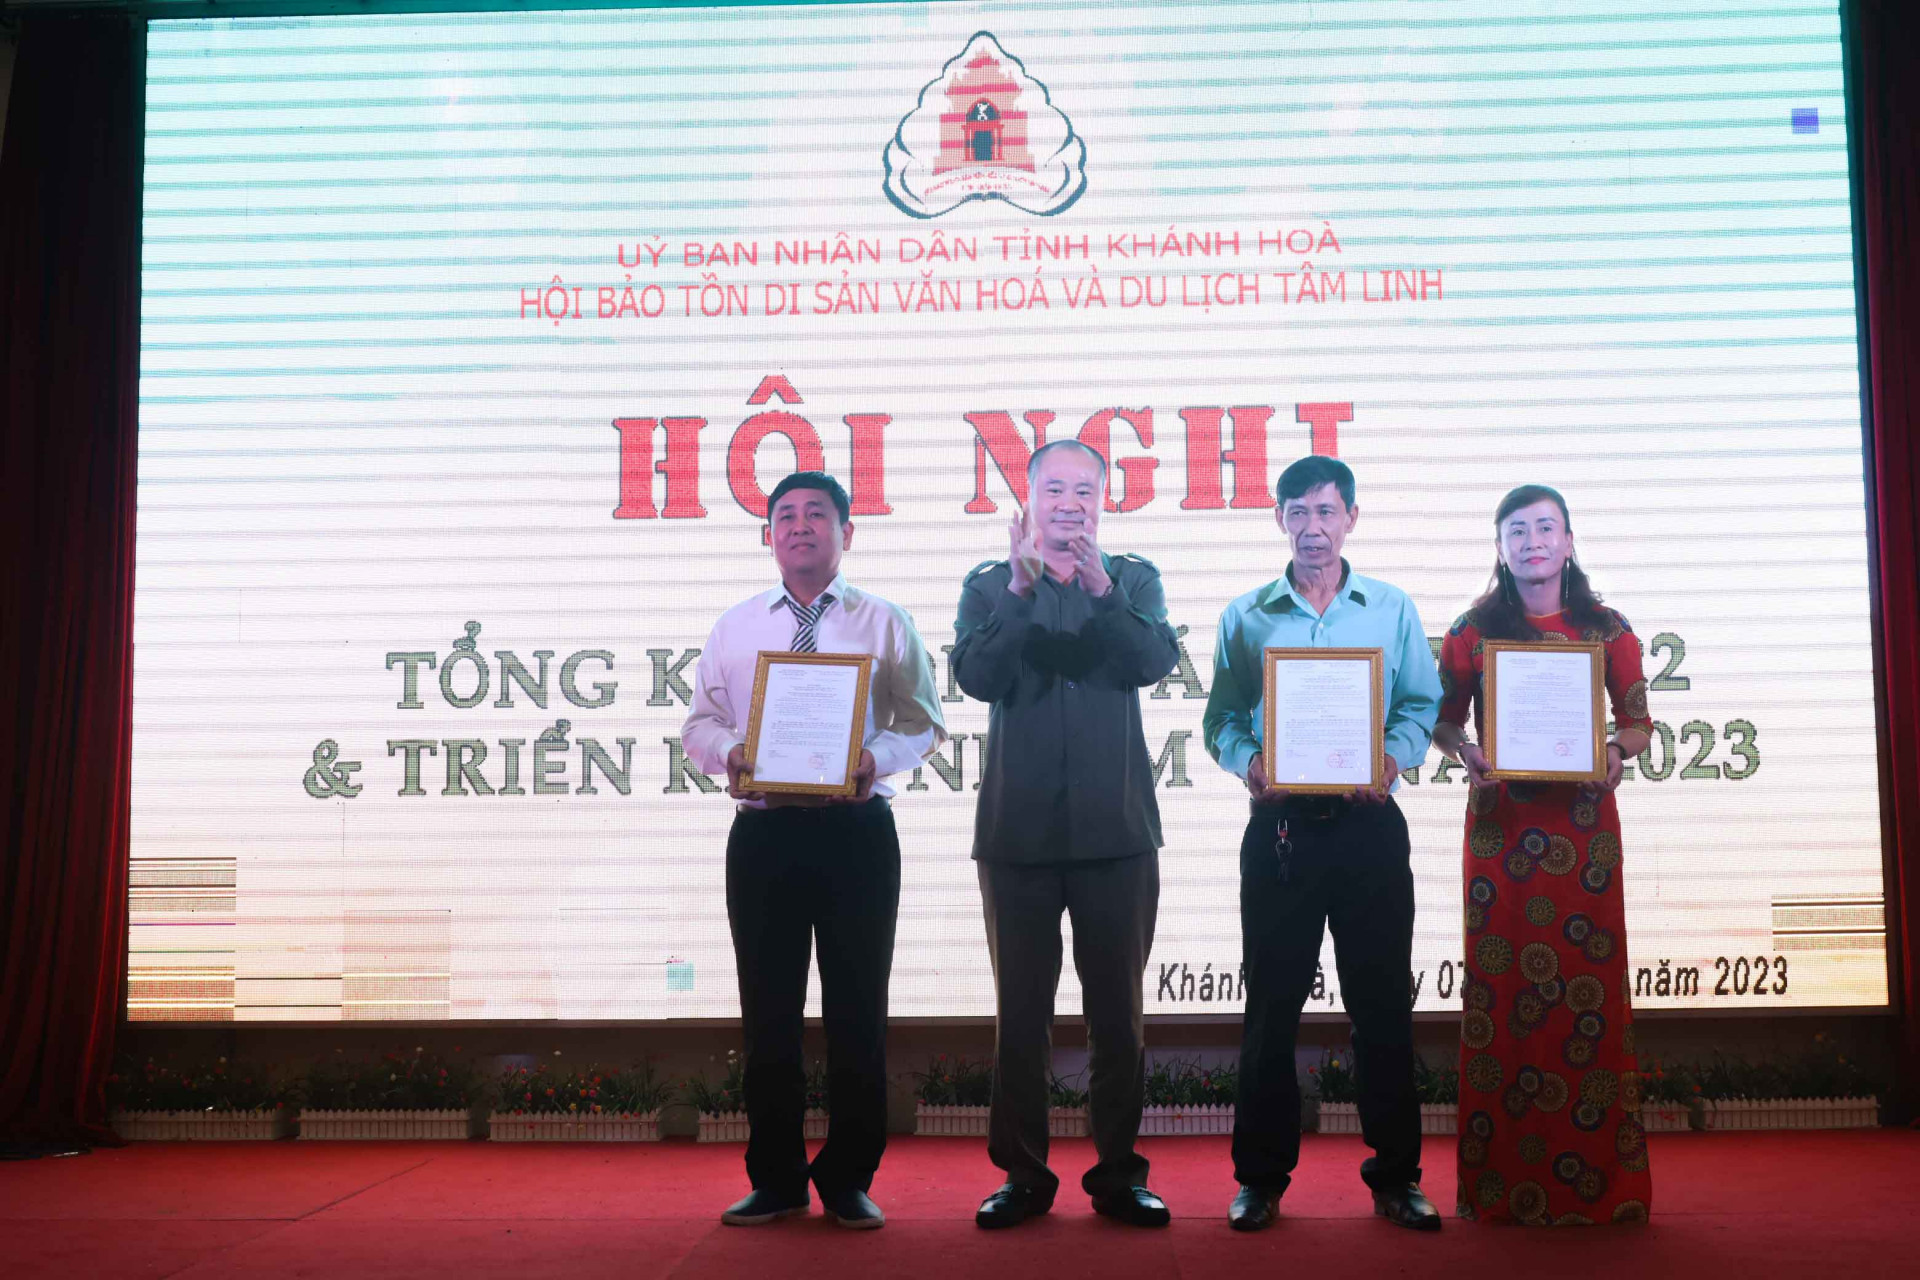 Đại diện Hội Bảo tồn Di sản văn hóa và Du lịch tâm linh tỉnh Khánh Hòa trao quyết định kết nạp mới 3 đoàn dân vũ dân gian.